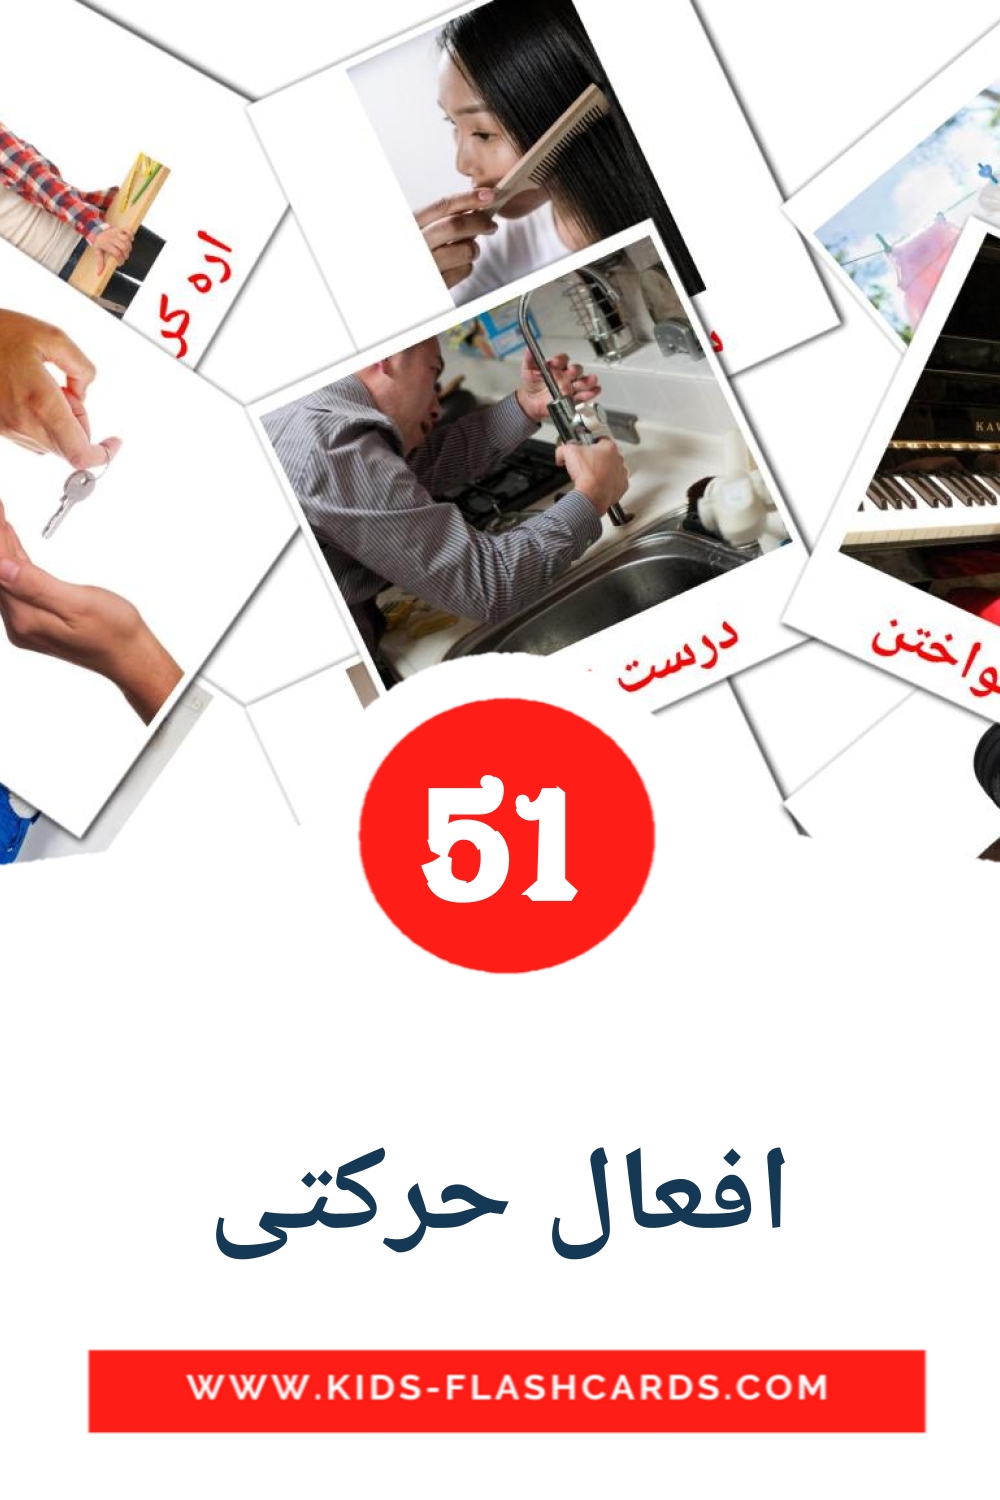 51 carte illustrate di افعال حرکتی per la scuola materna in persiano